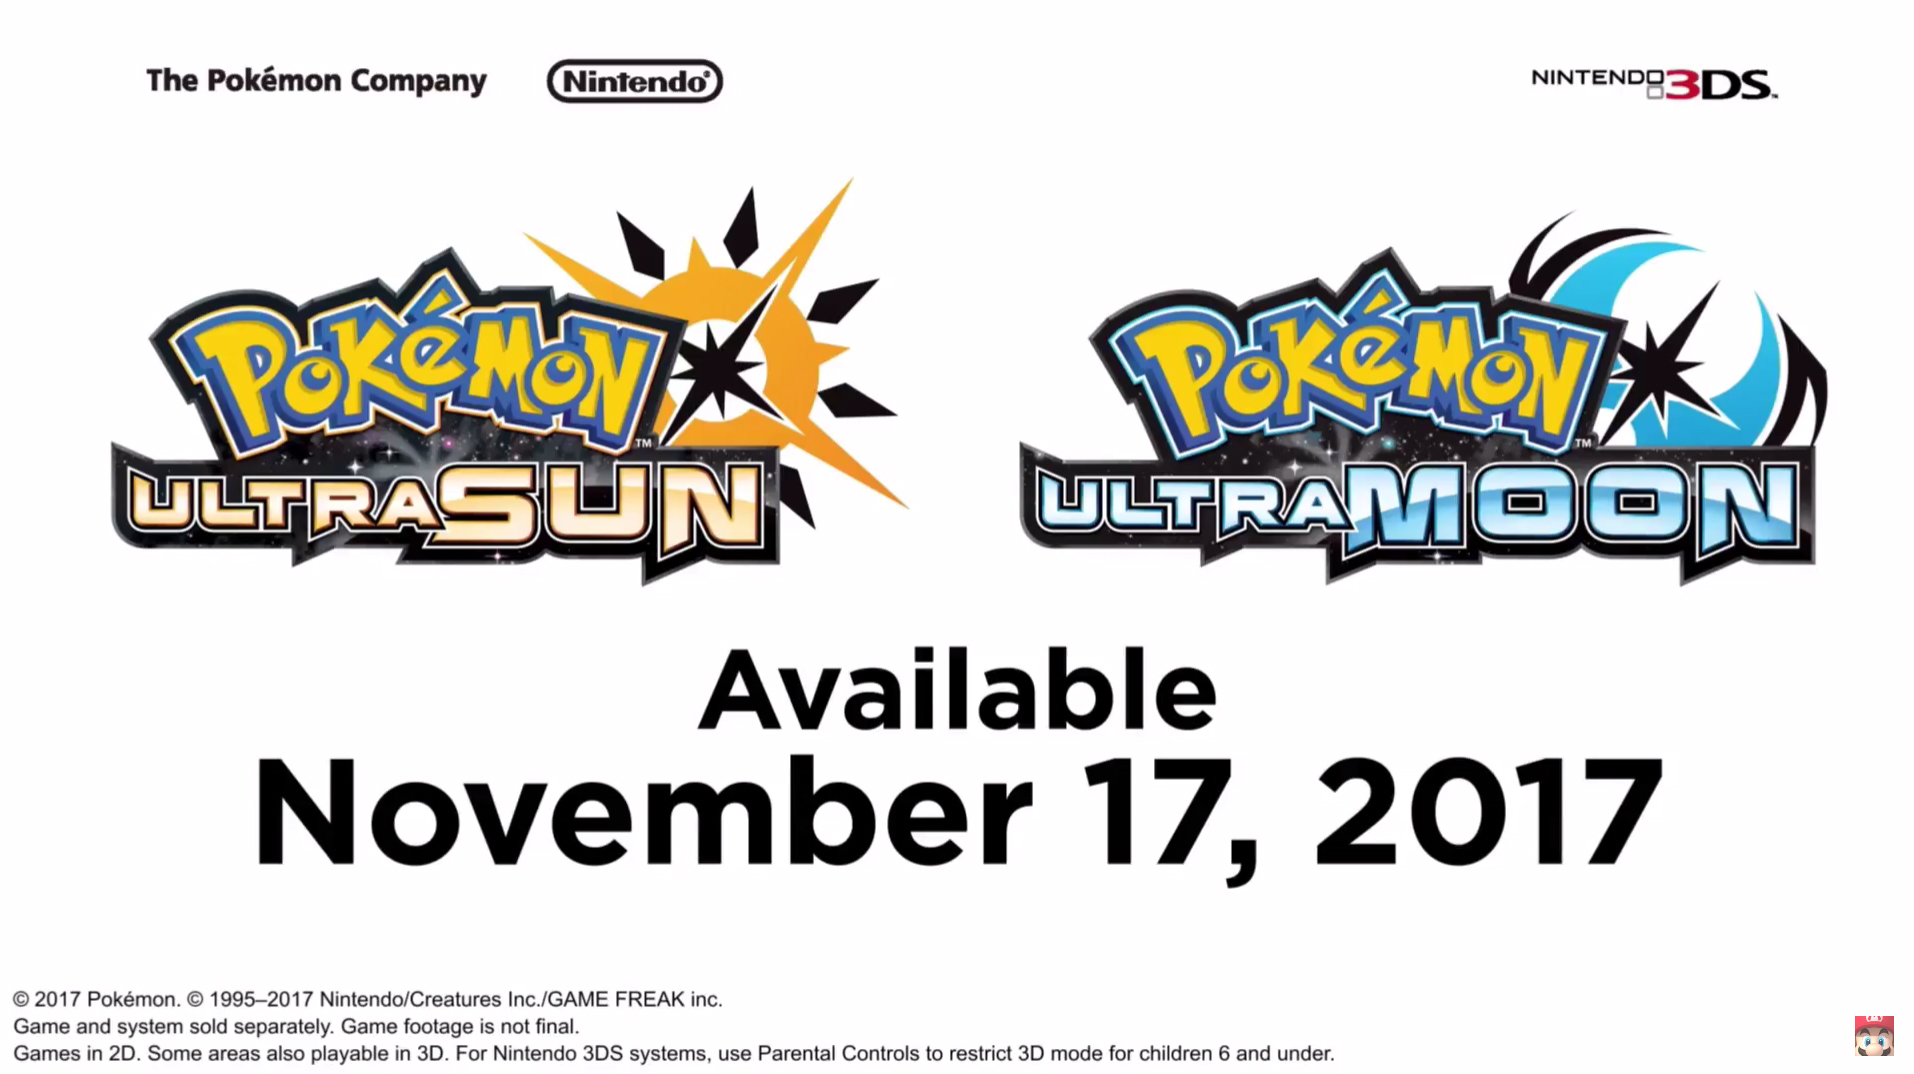 NEW Pokémon Announcement! Pokemon Pokemon Go on